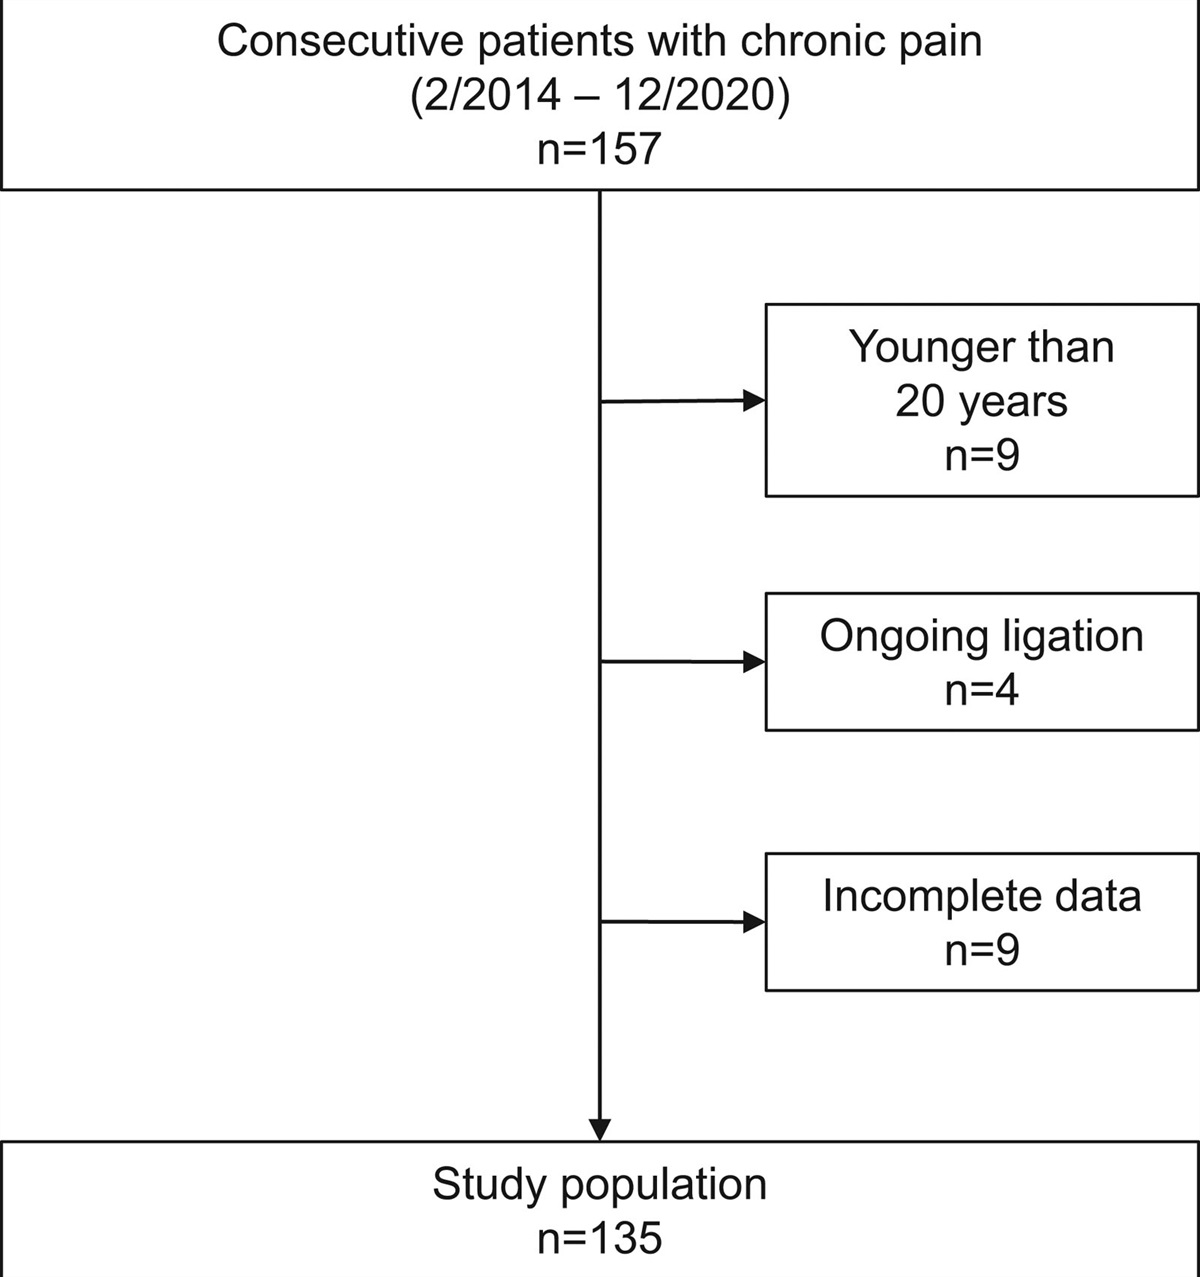 Factors influencing caregiver burden in chronic pain patients: A retrospective study